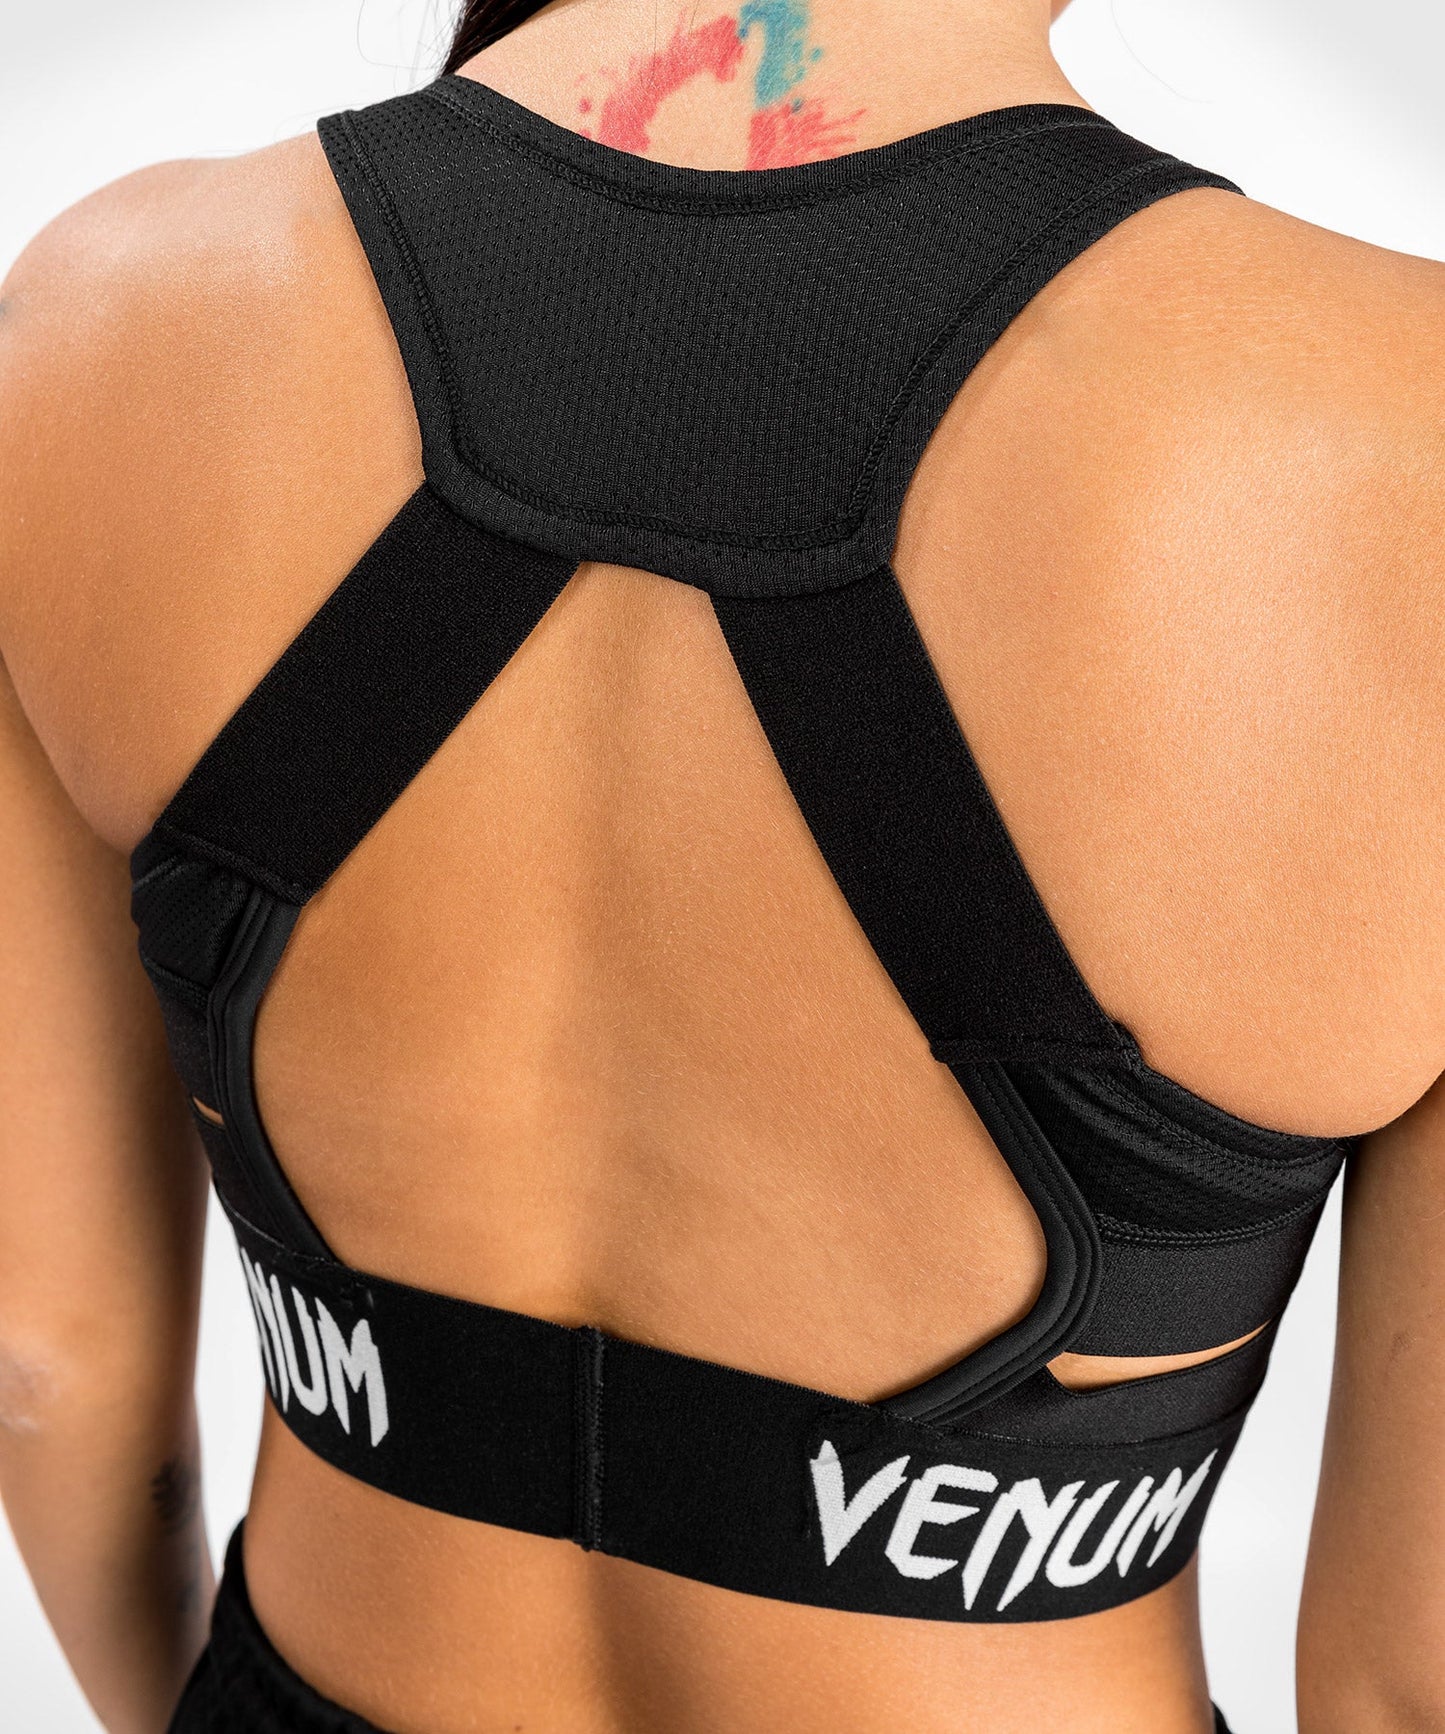 UFC Venum Authentic Fight Week Women's Weigh-in Bra - Black